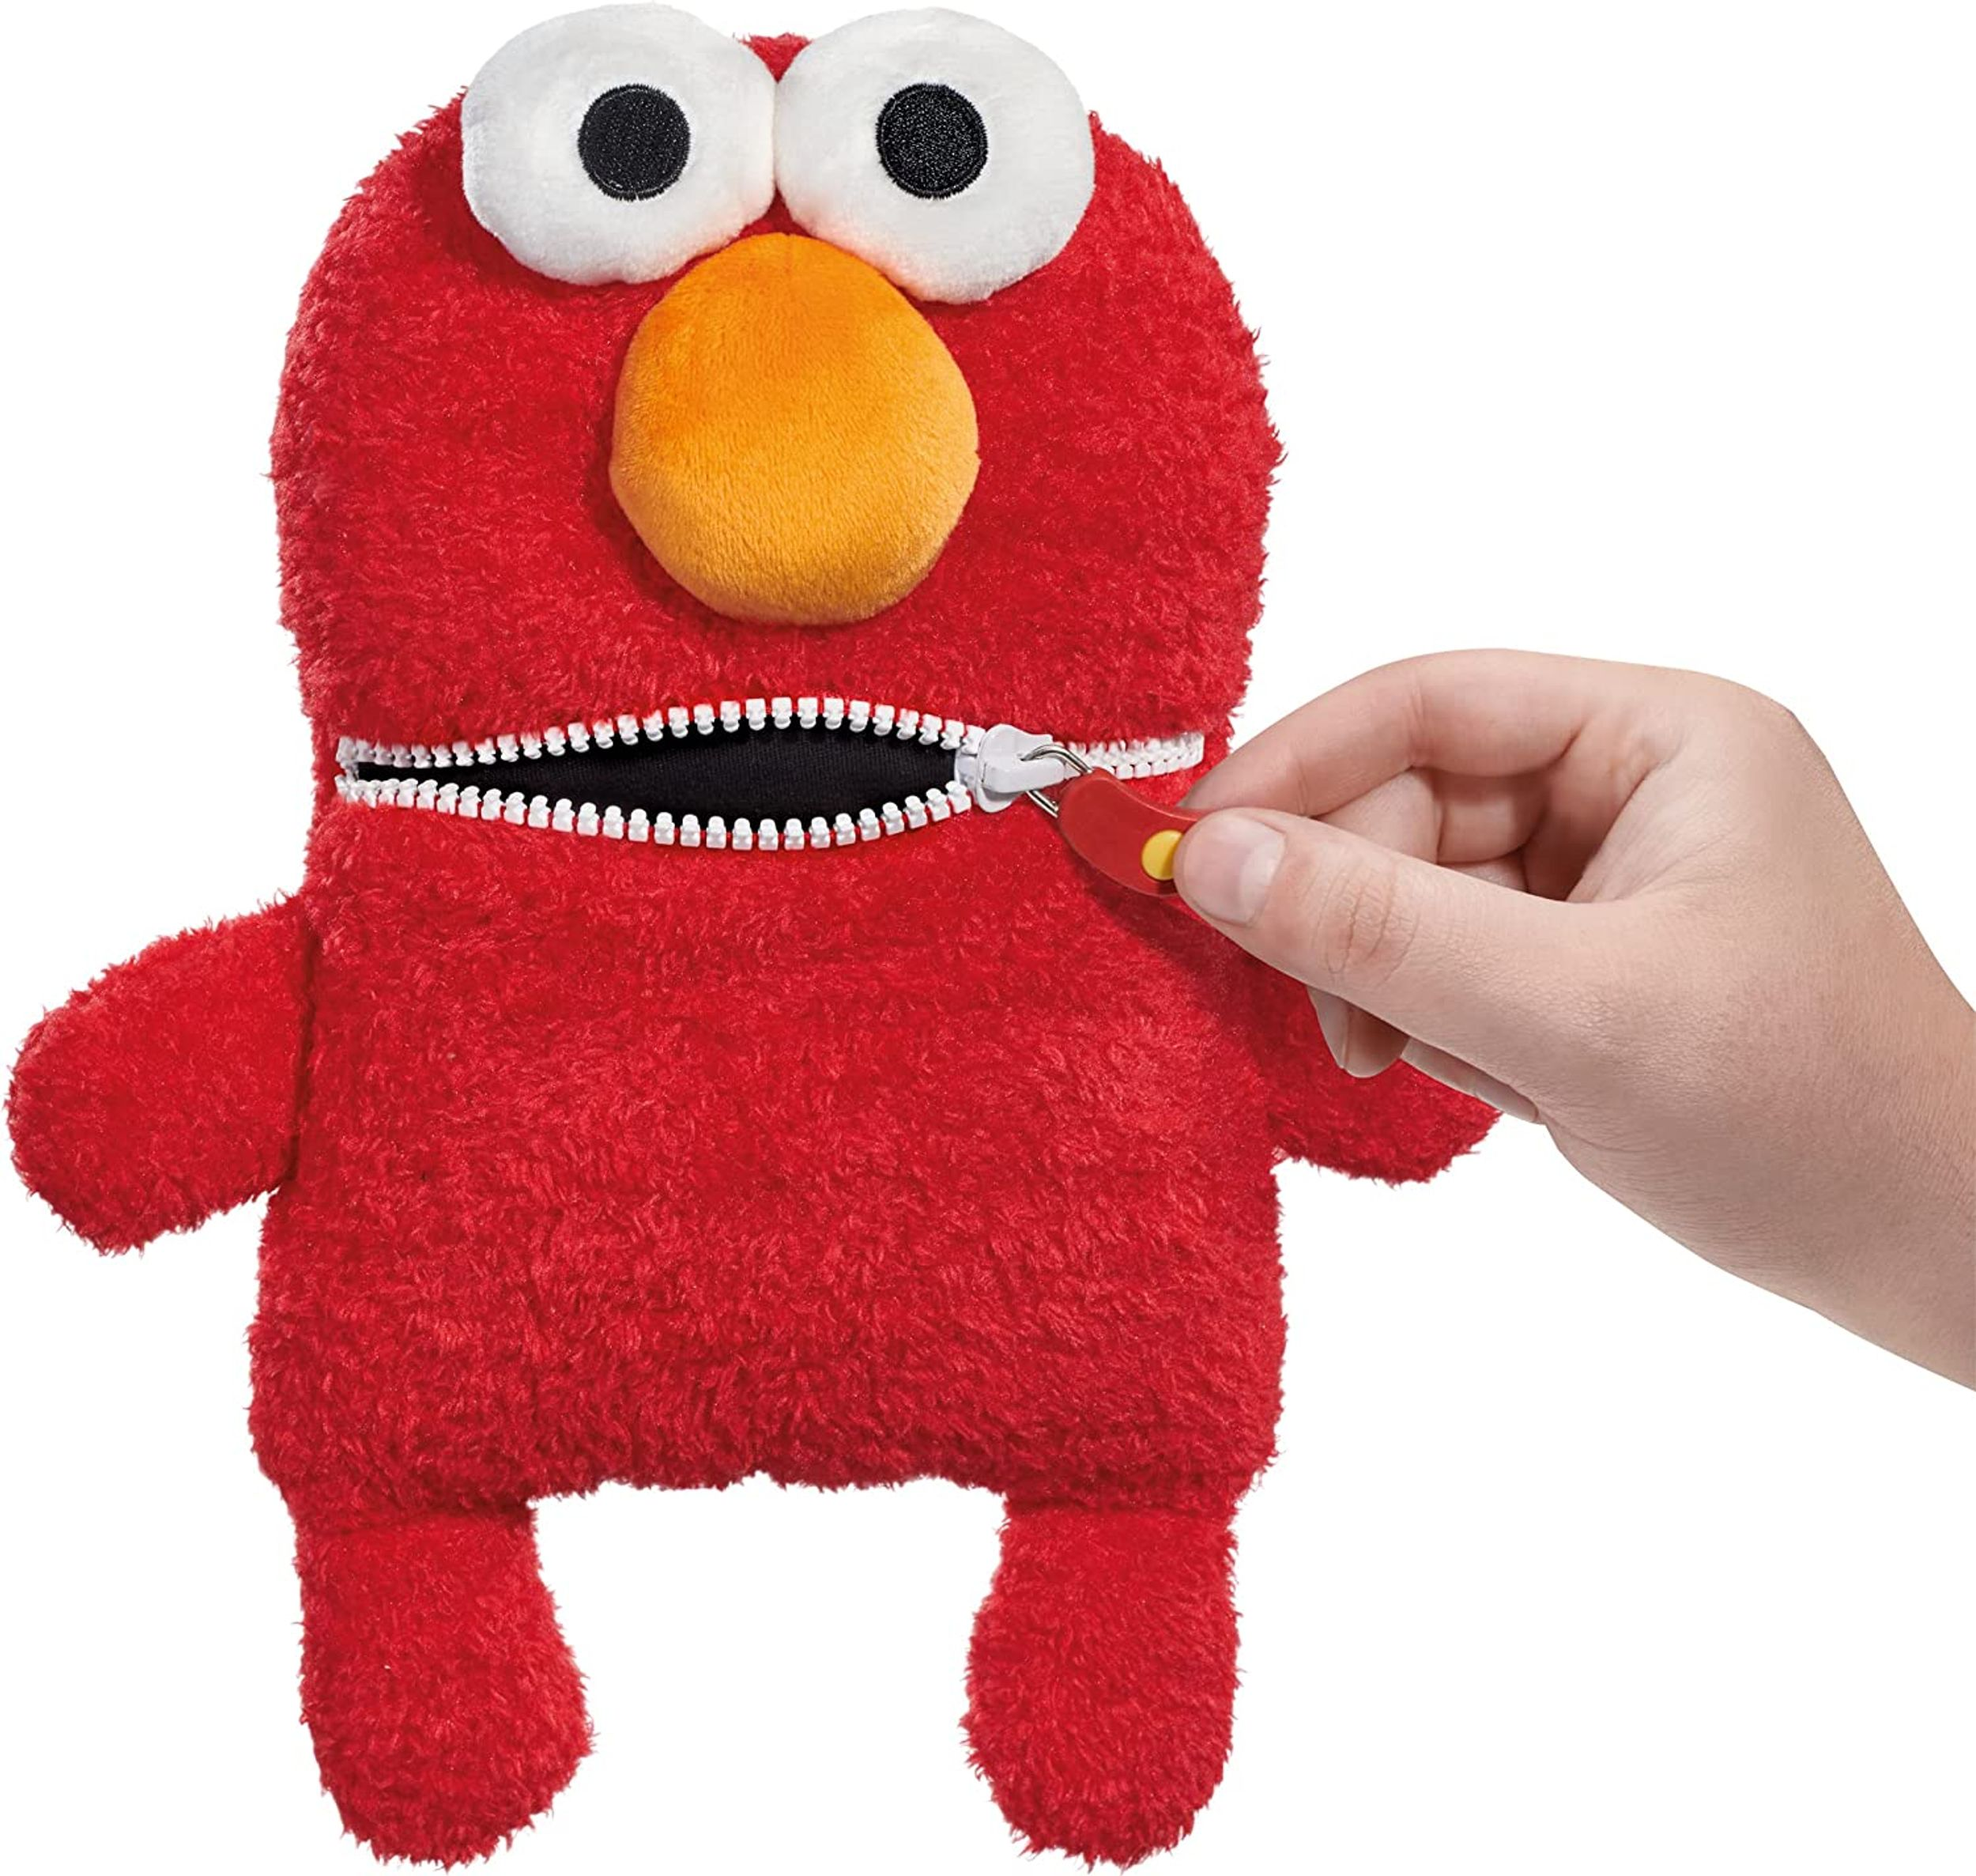 Sorgenfresser SCHMIDT Elmo Sesamstrasse SPIELE Plüschfigur